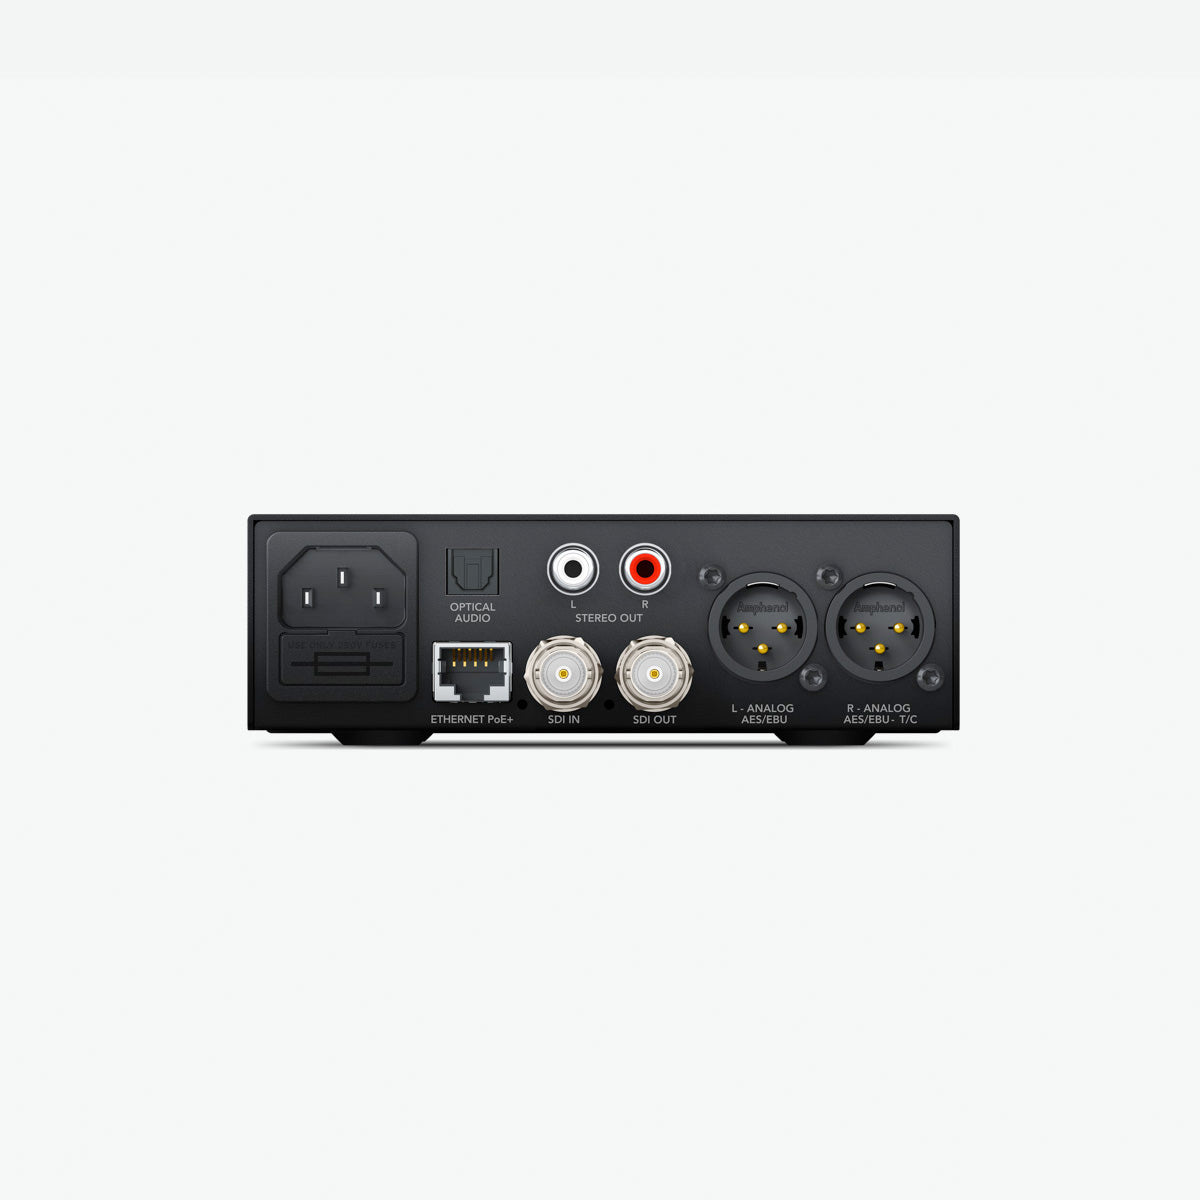 Blackmagic Design(ブラックマジックデザイン) Teranex Mini - SDI to Audio 12G CONVNTRM/CA/SDIAU